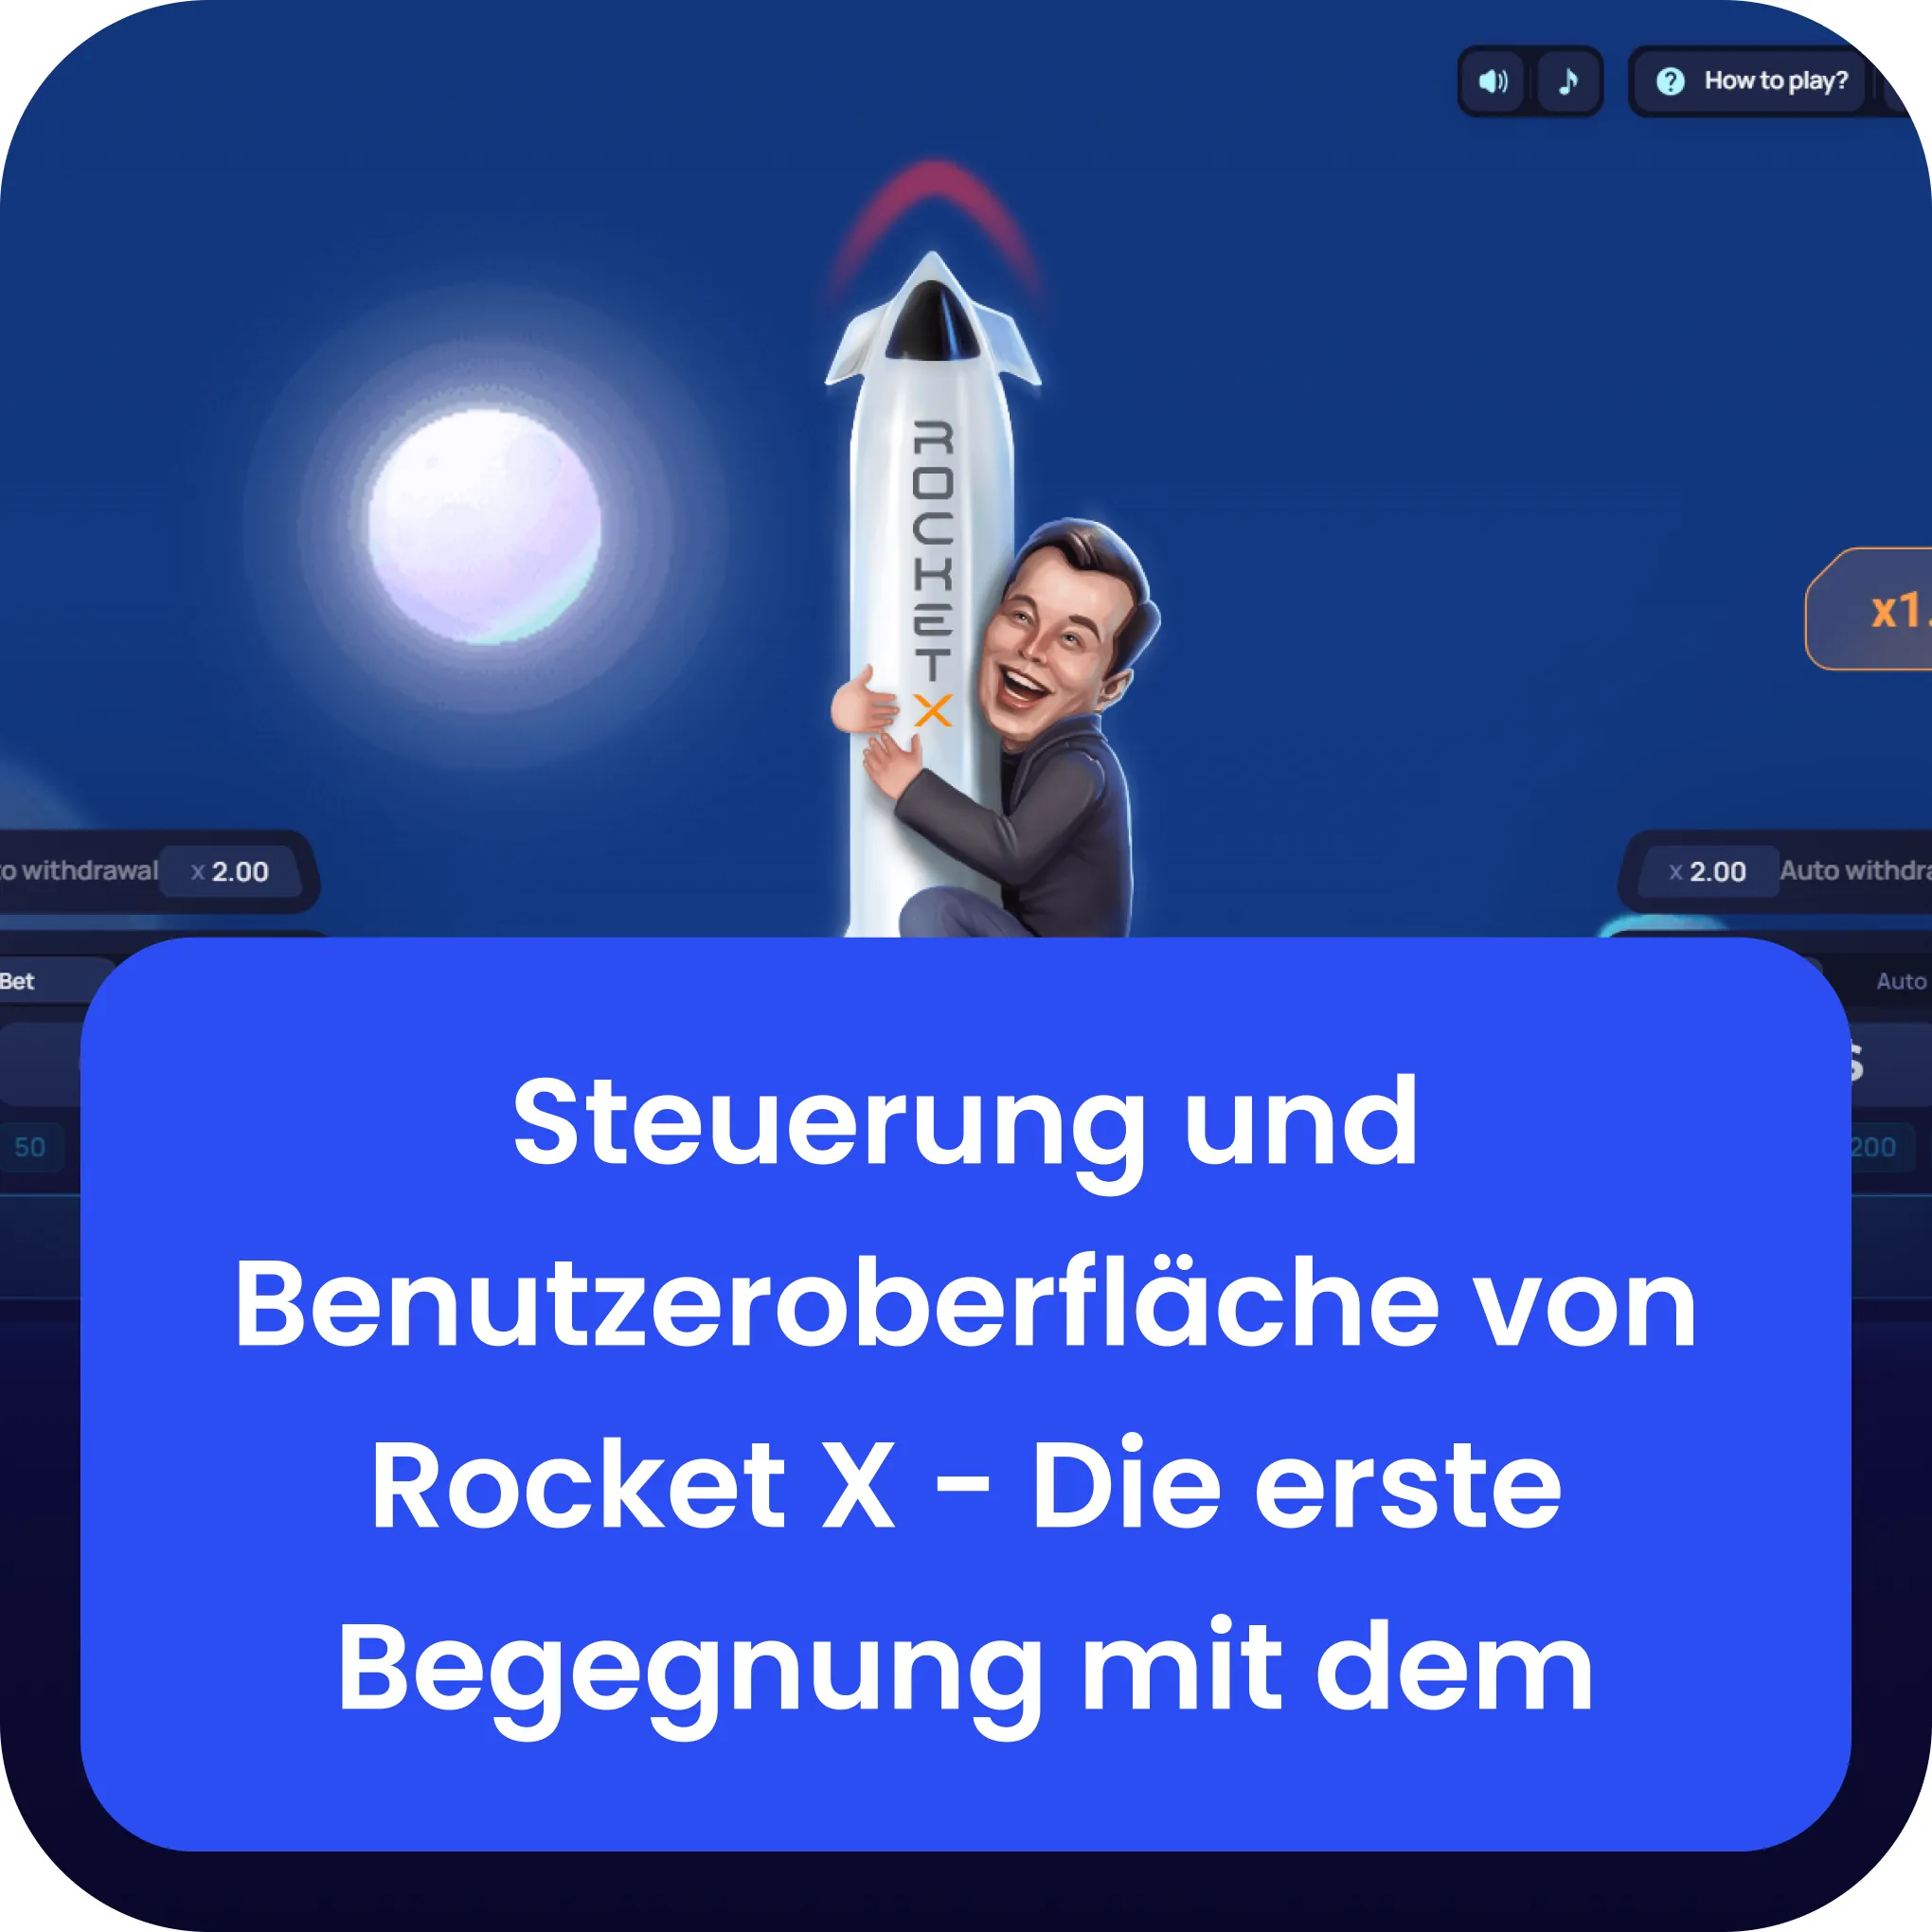 benutzeroberfläche rocket x 